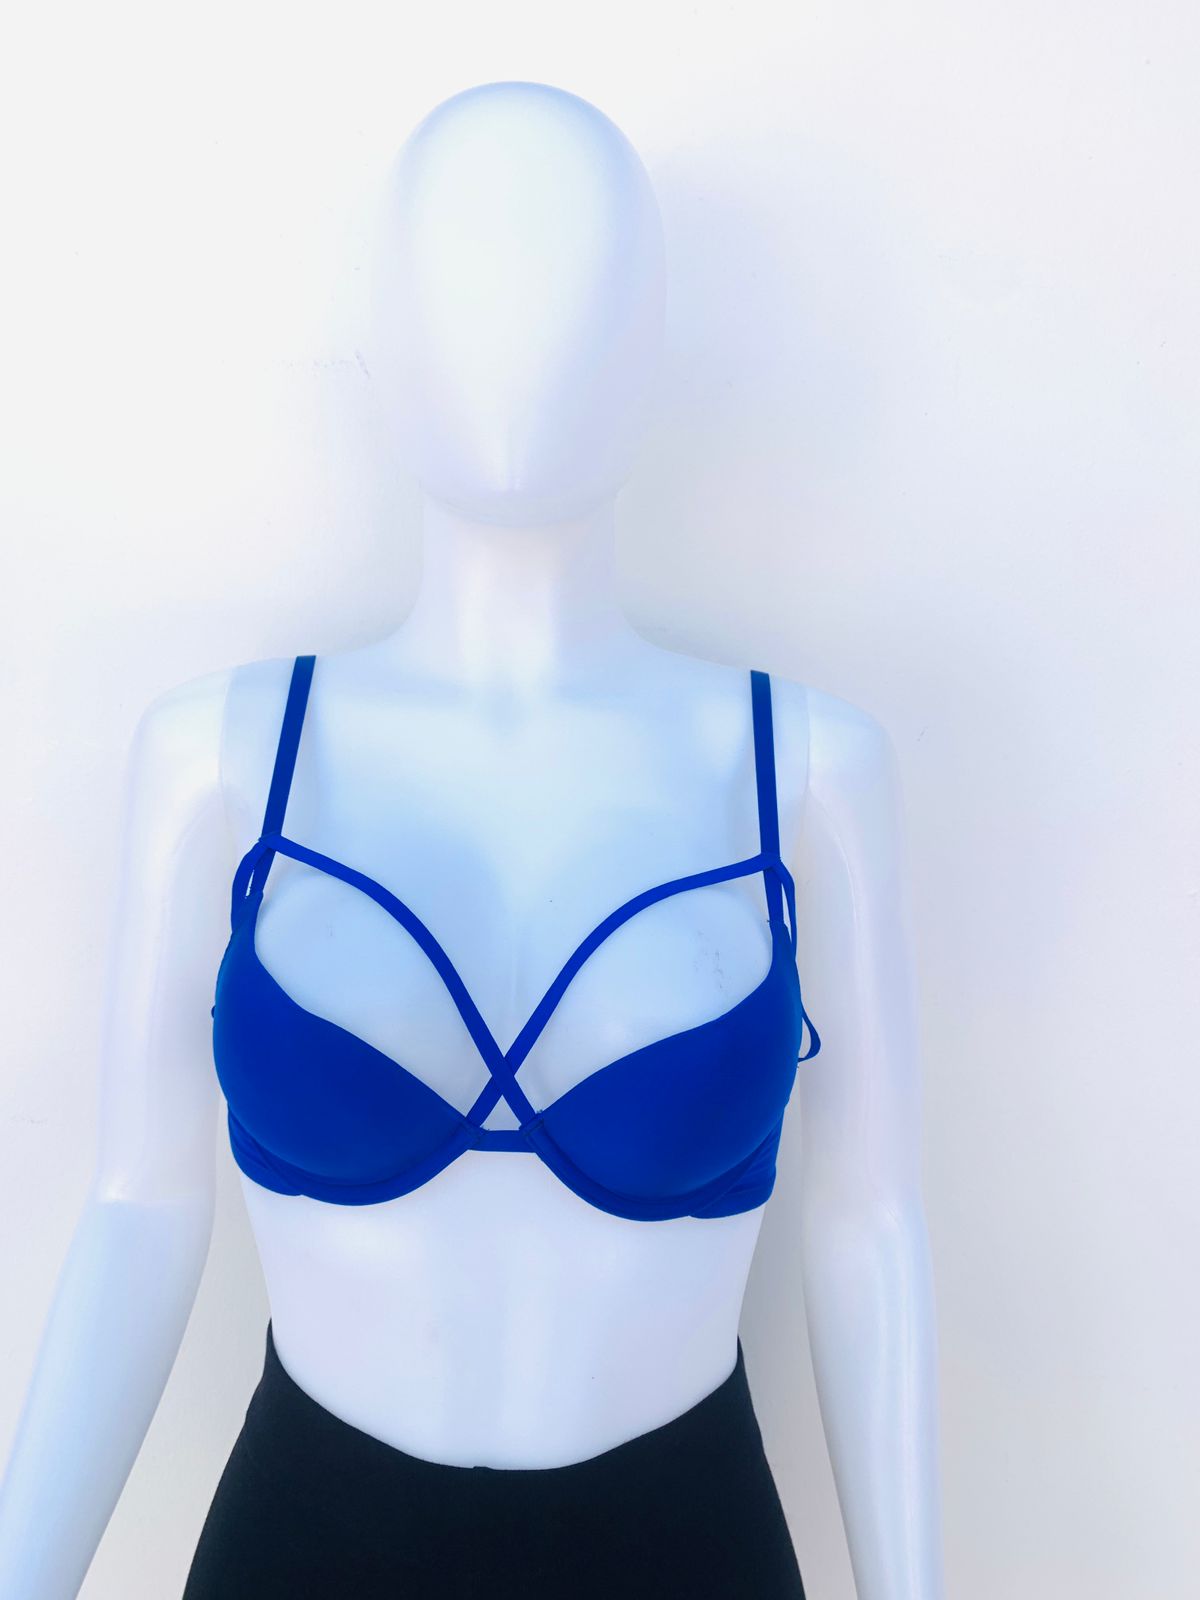 Brasier Victoria Secret’s PINK original azul marino brillante con diseño cruzado en el centro.